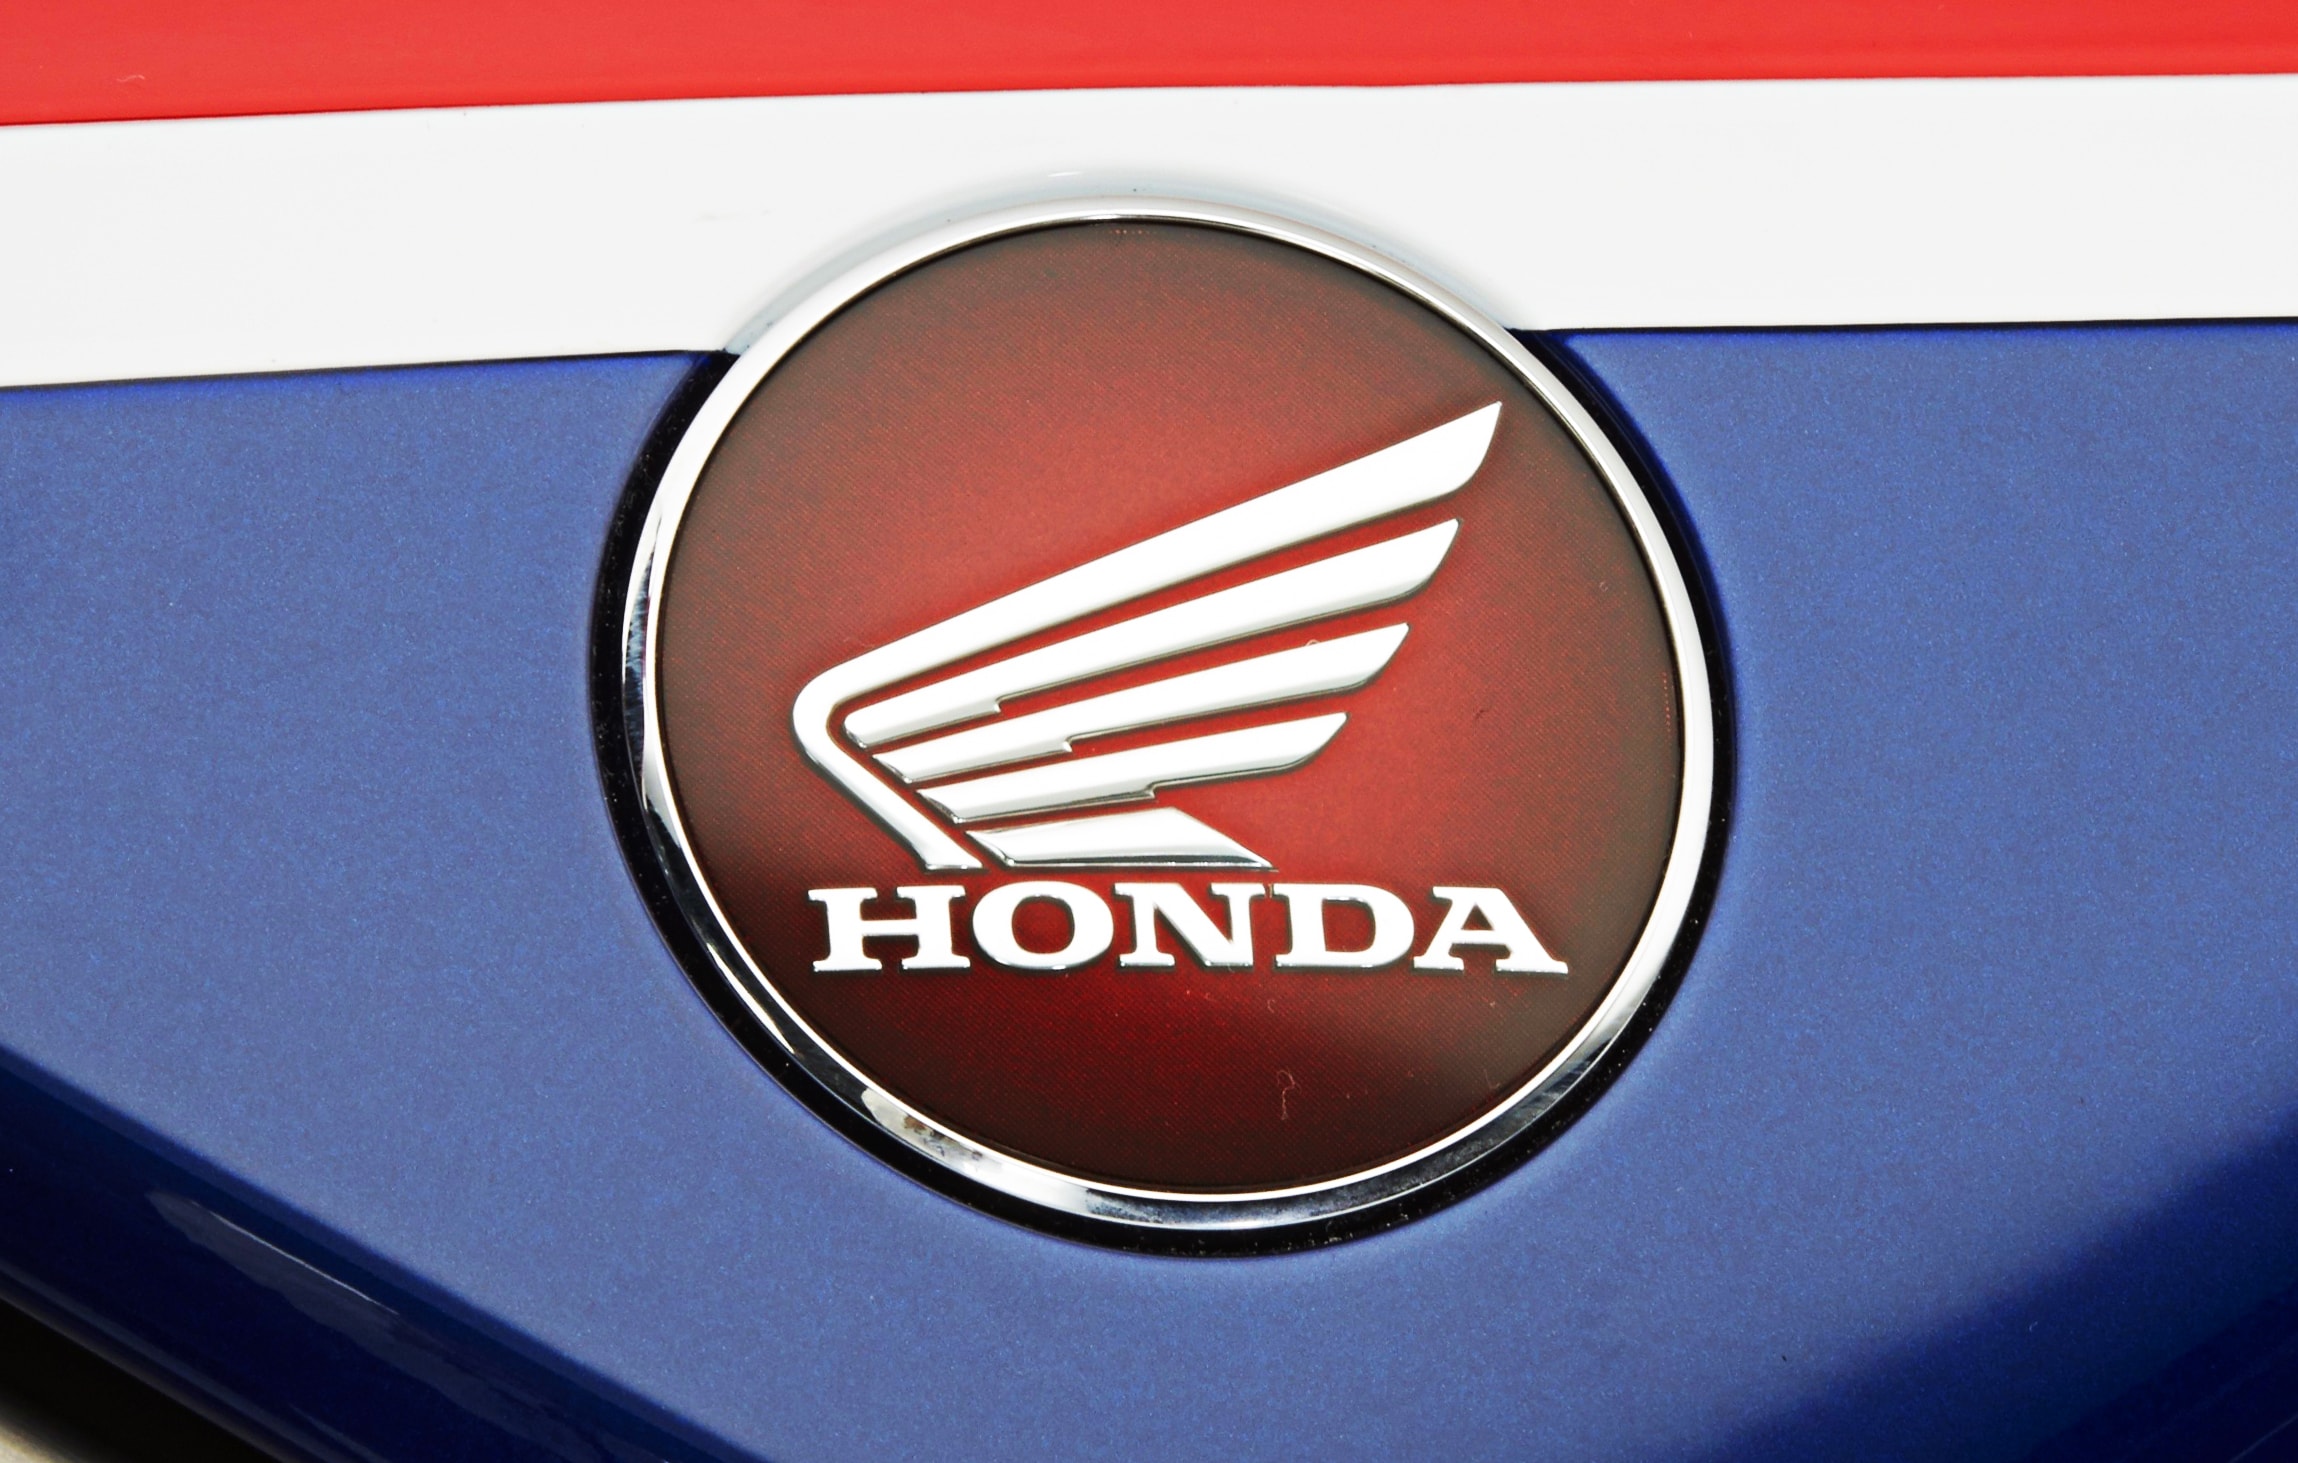 honda motorcycle logos free download #32868